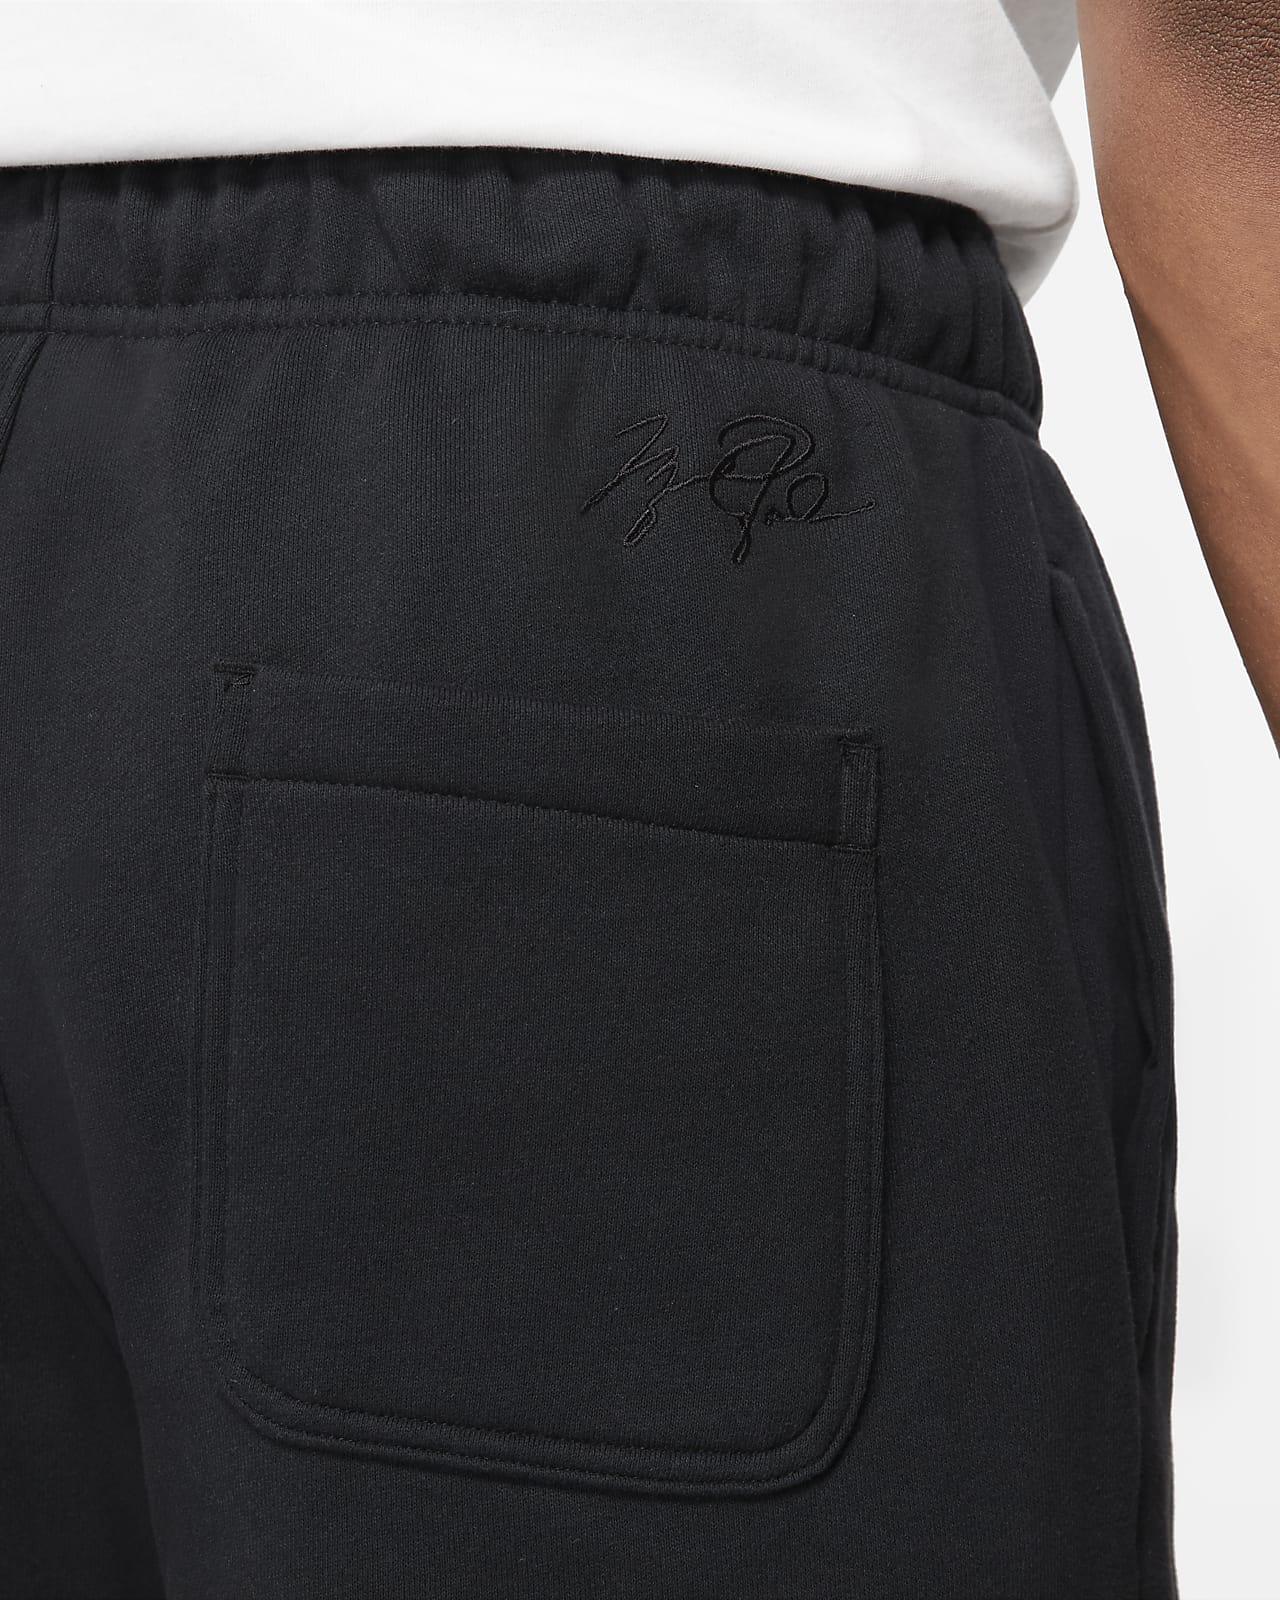 Jordan Brooklyn Fleece Men's Shorts. Nike SA